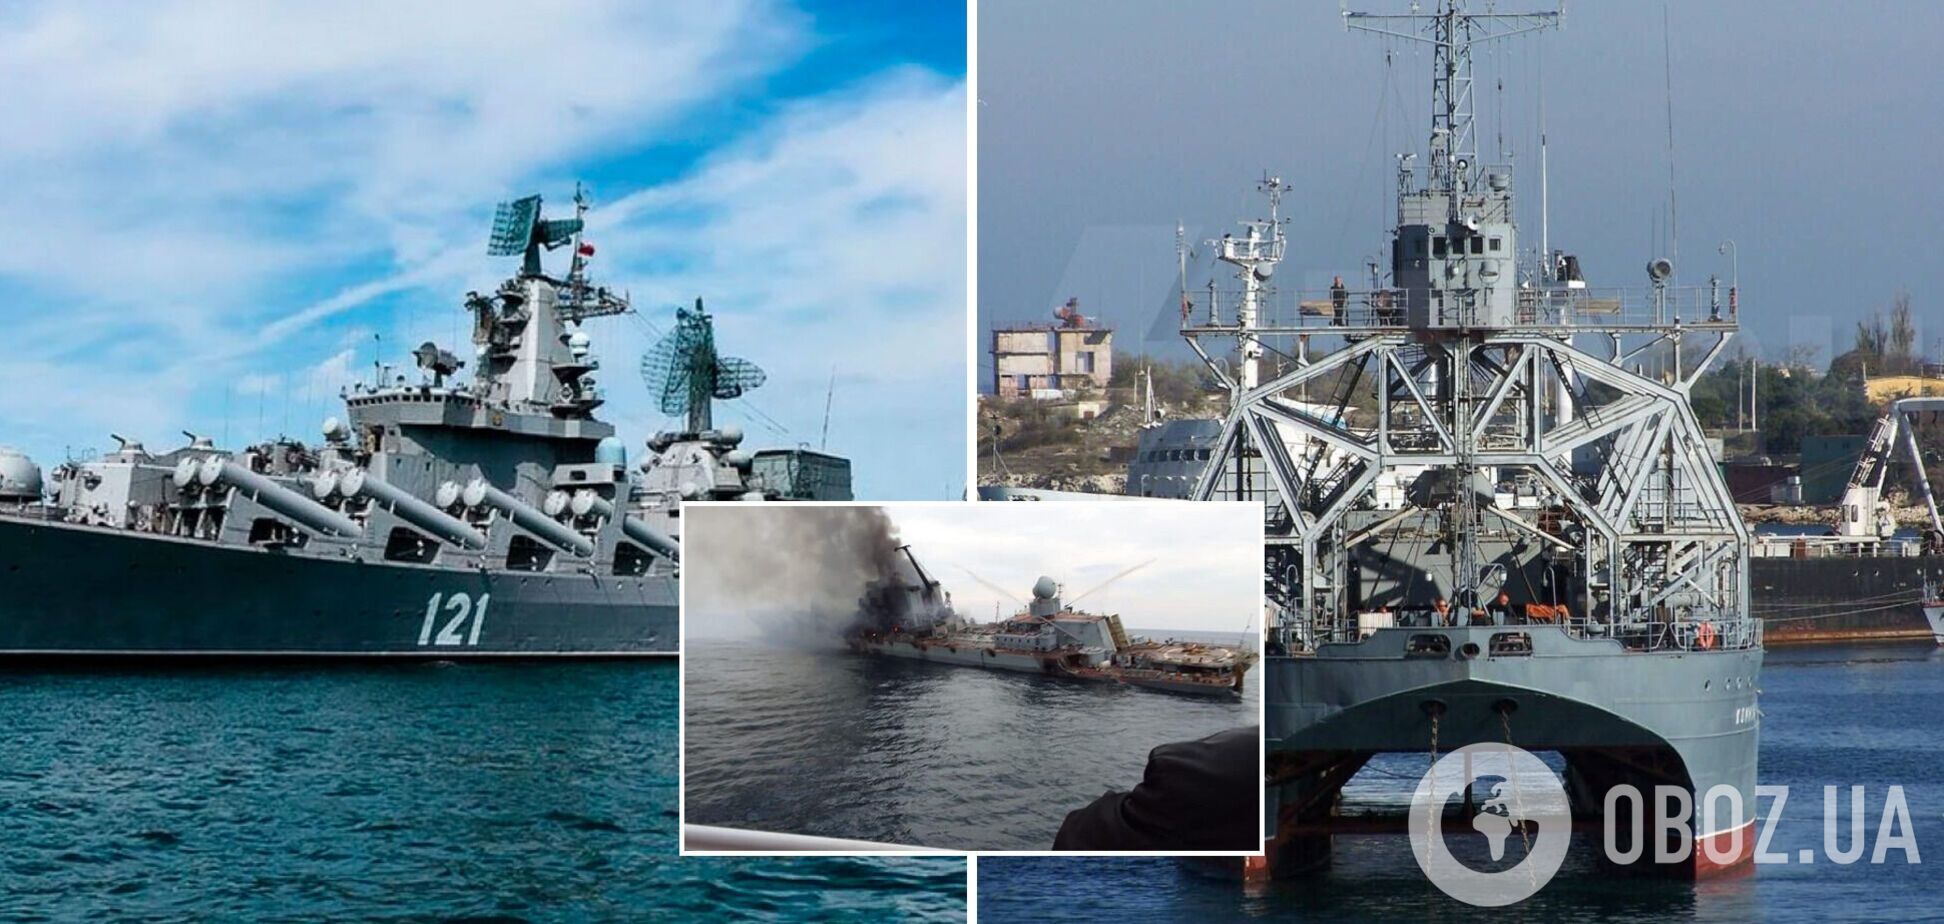 Россия направила на место гибели крейсера 'Москва' корабль 'Коммуна', построенный еще в 1913 году – СМИ